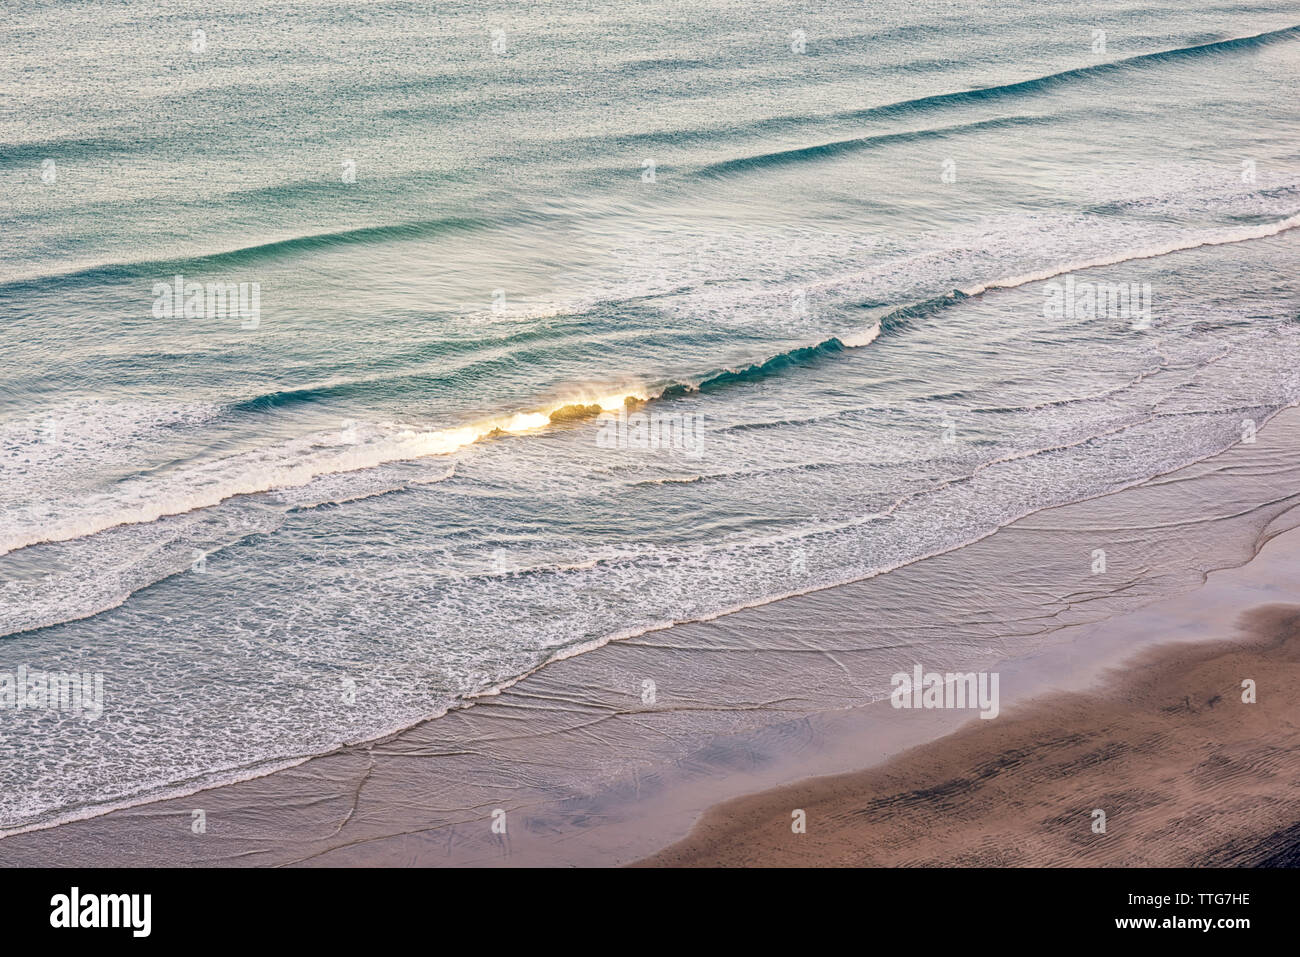 Waves breaking on an empty beach. La Jolla, CA. Stock Photo